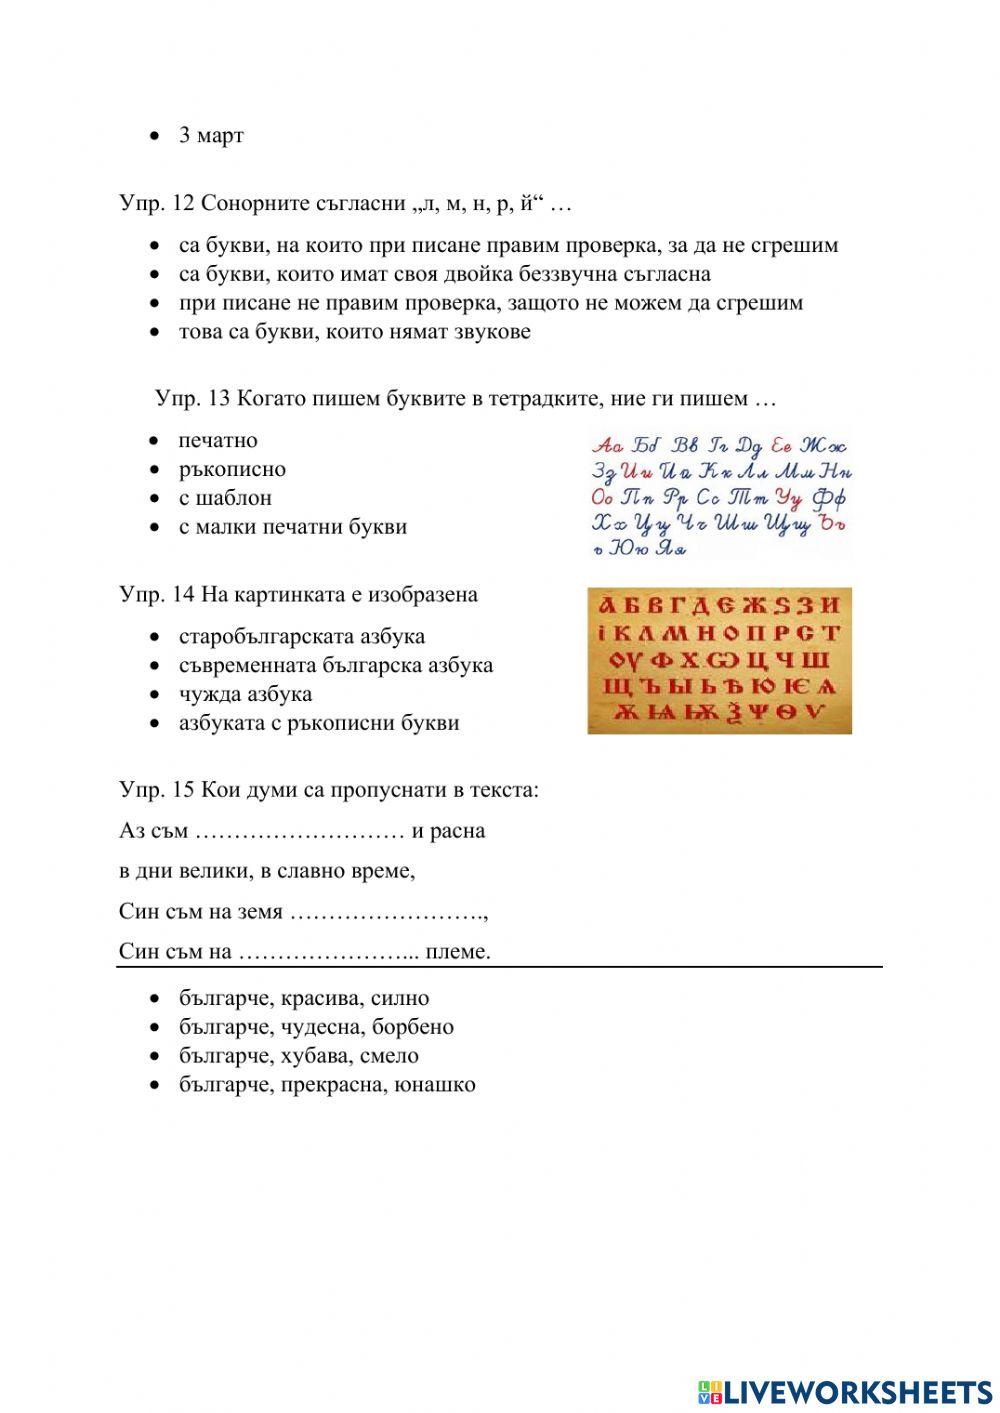 Българската азбука - тест